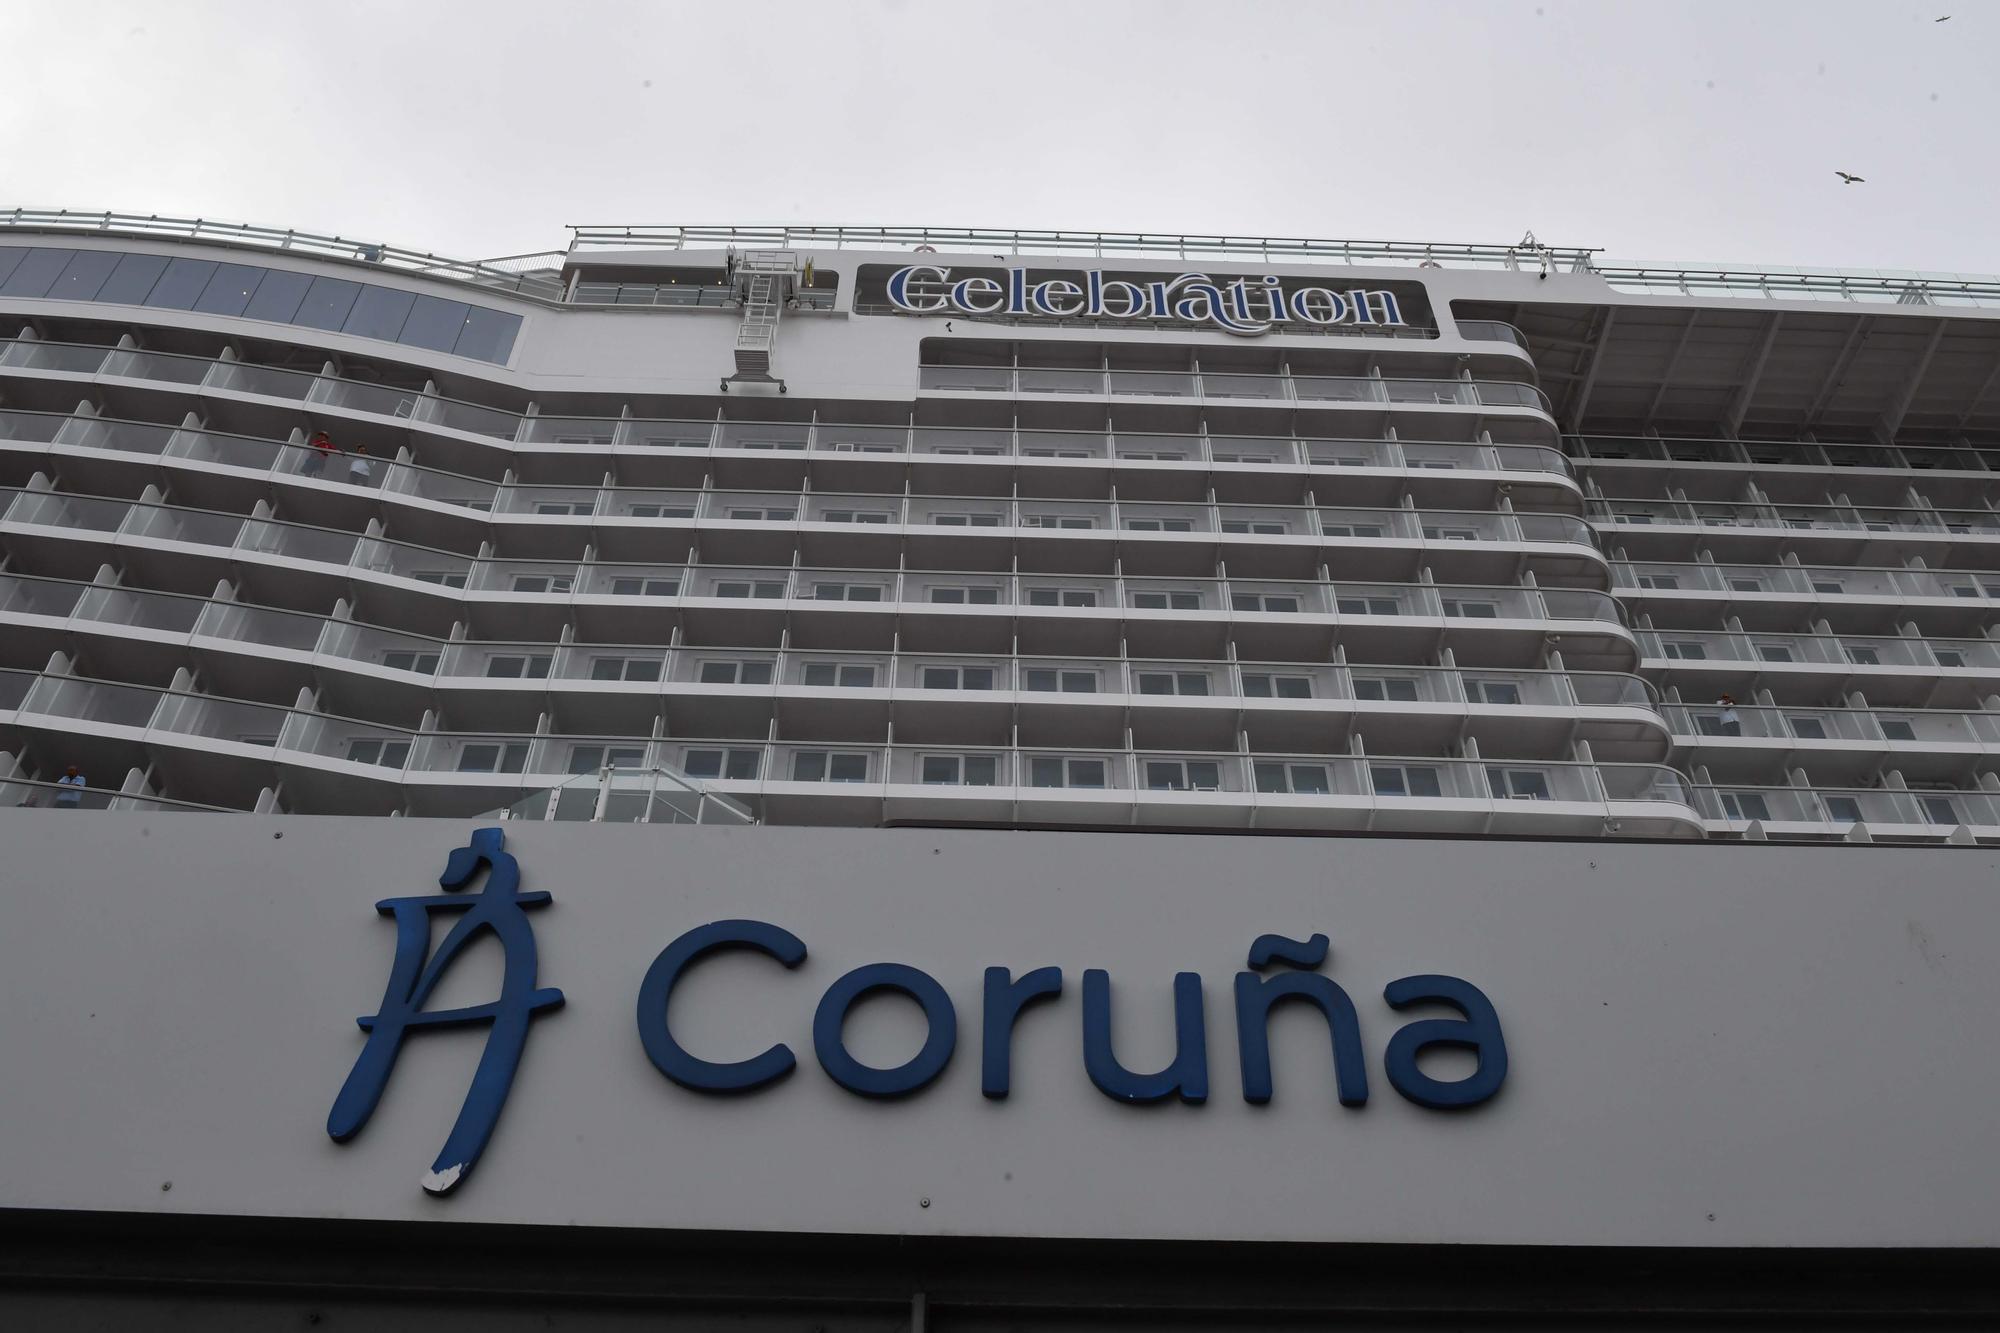 El crucero 'Carnival Celebration' hace su primera escala en A Coruña